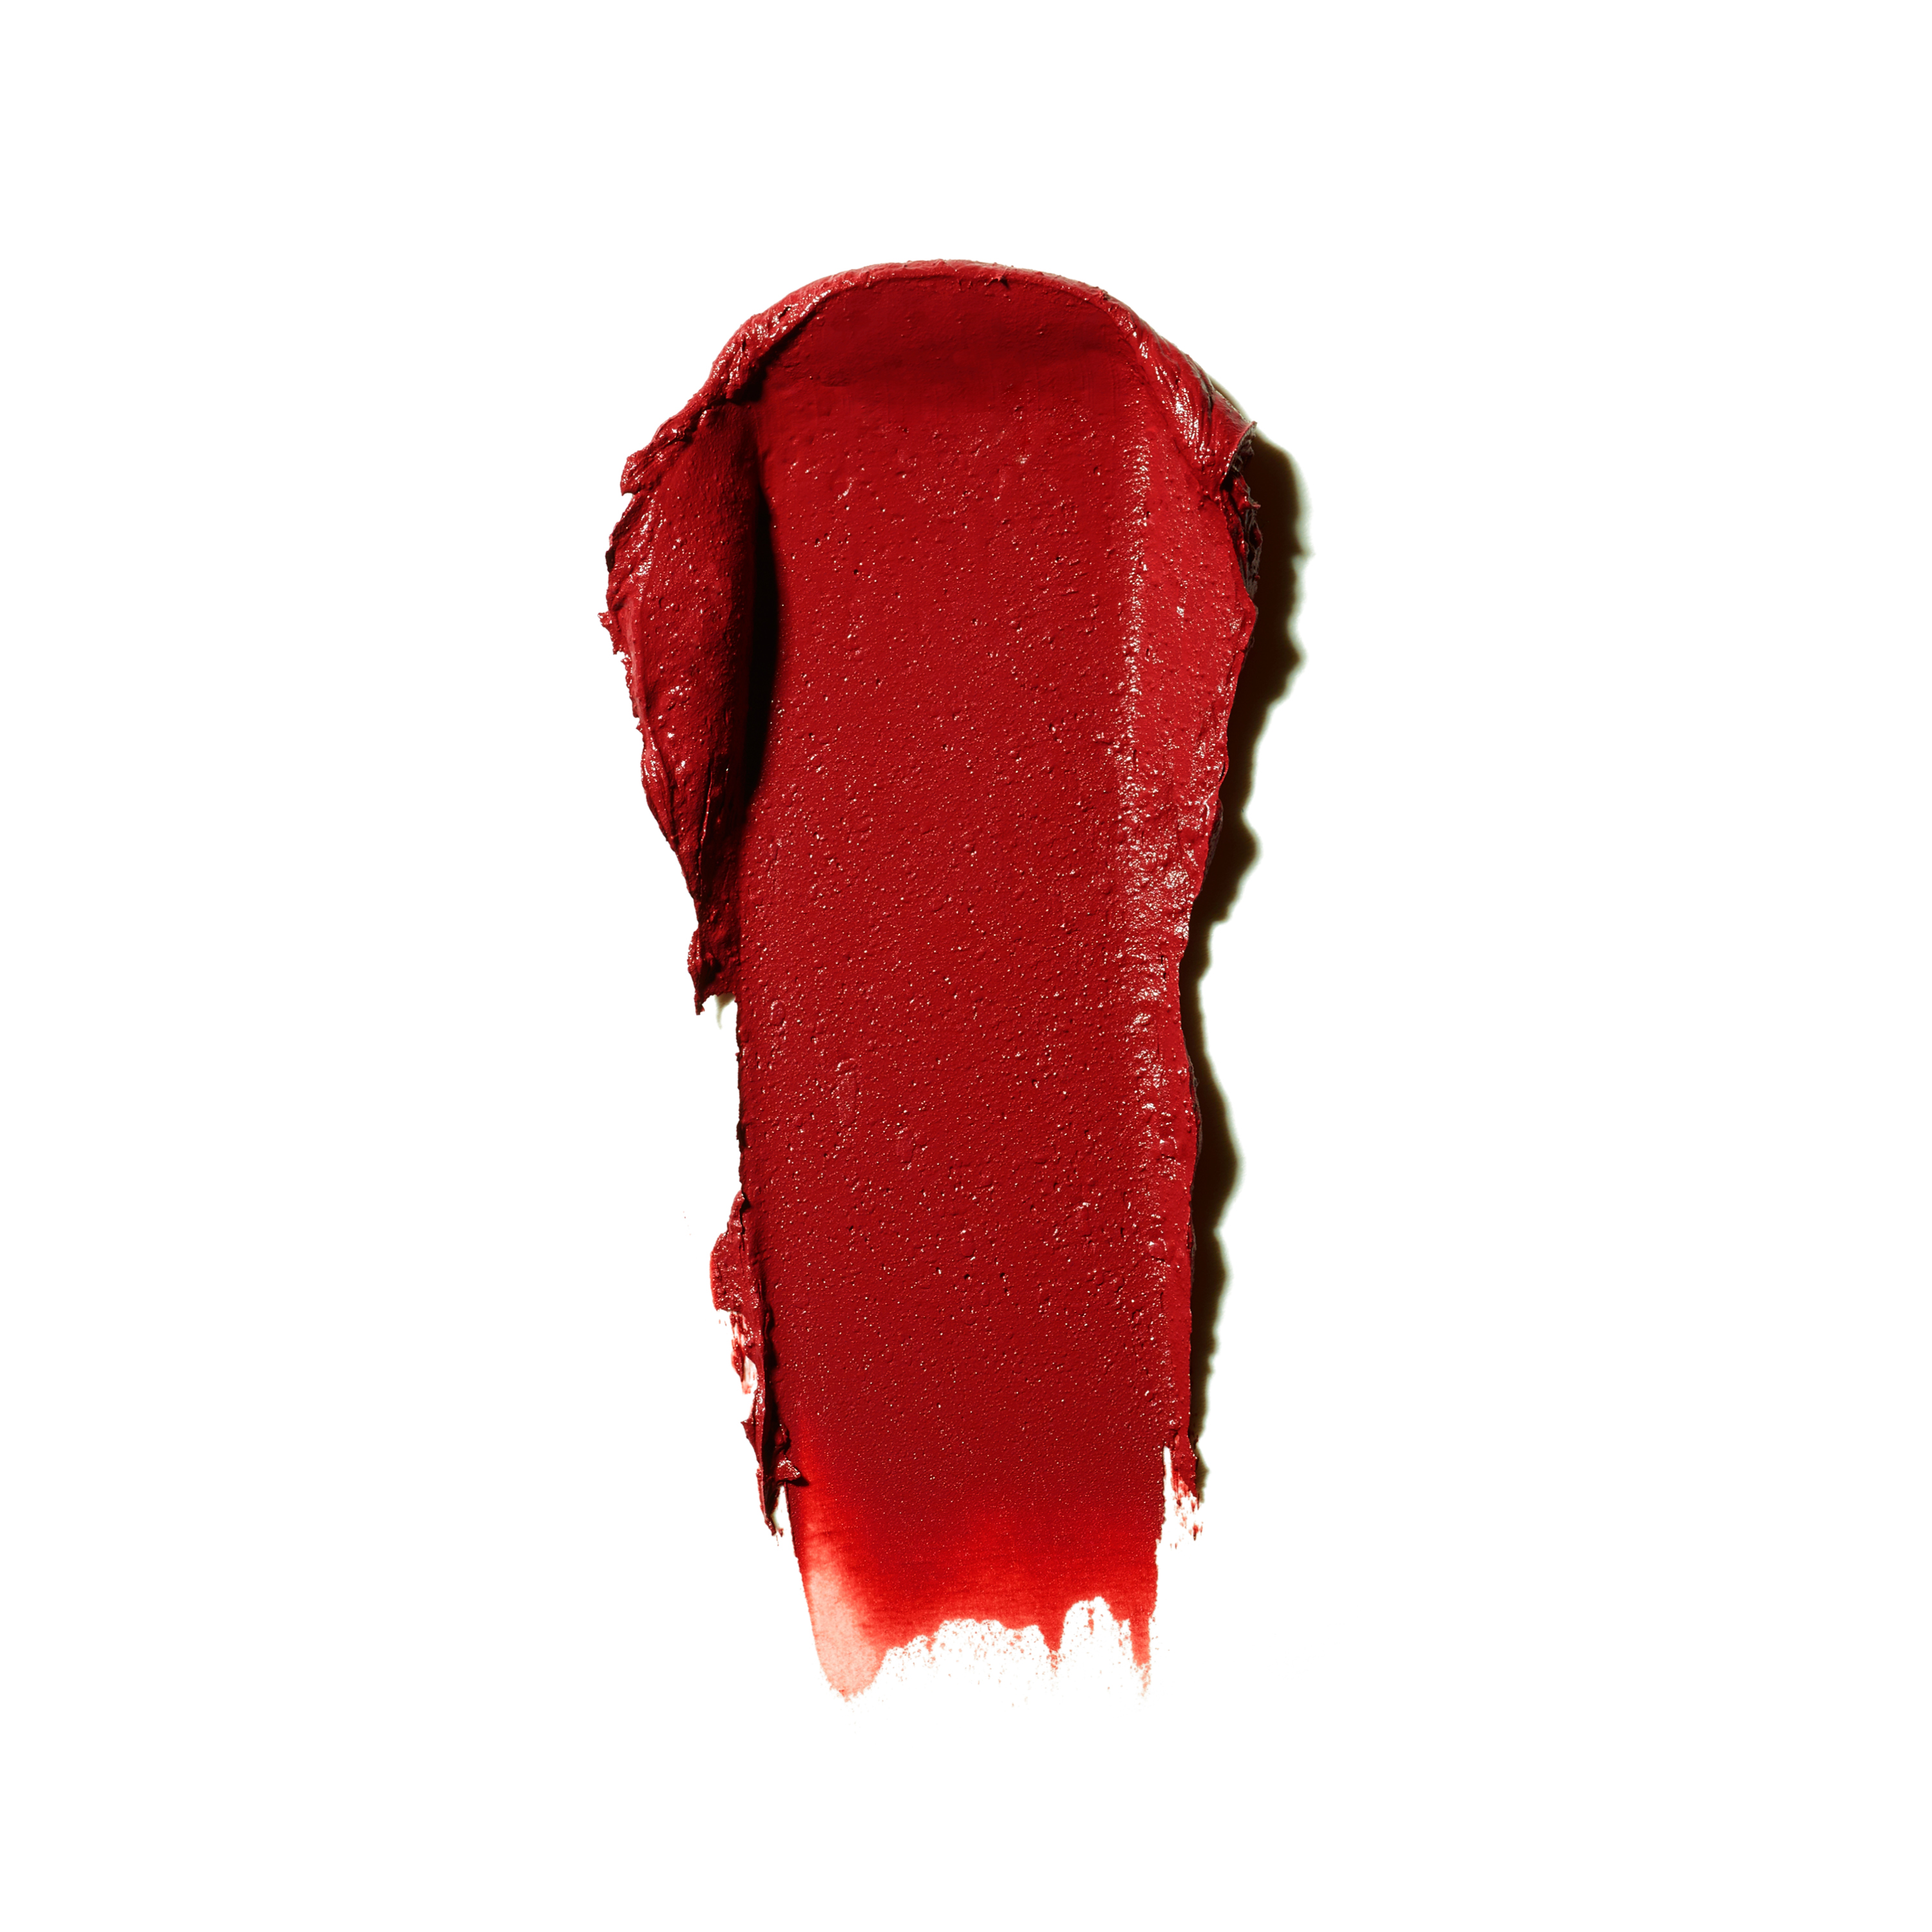  Mini Matte Lipstick, 06 Russian Red